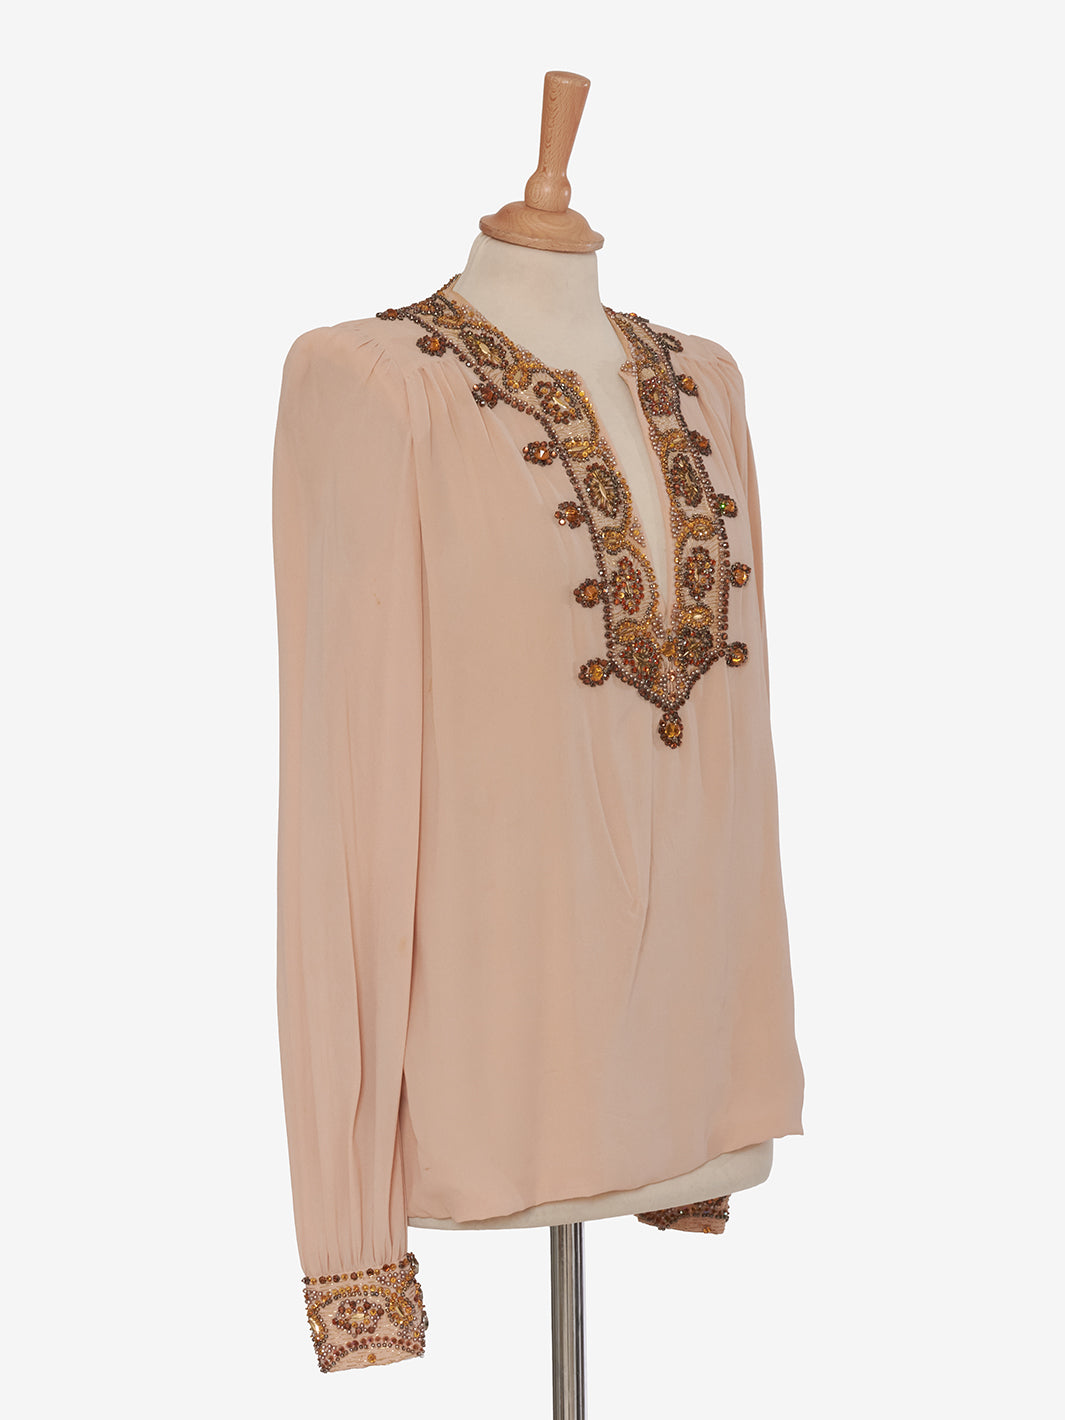 Vintage blouse with appliqués